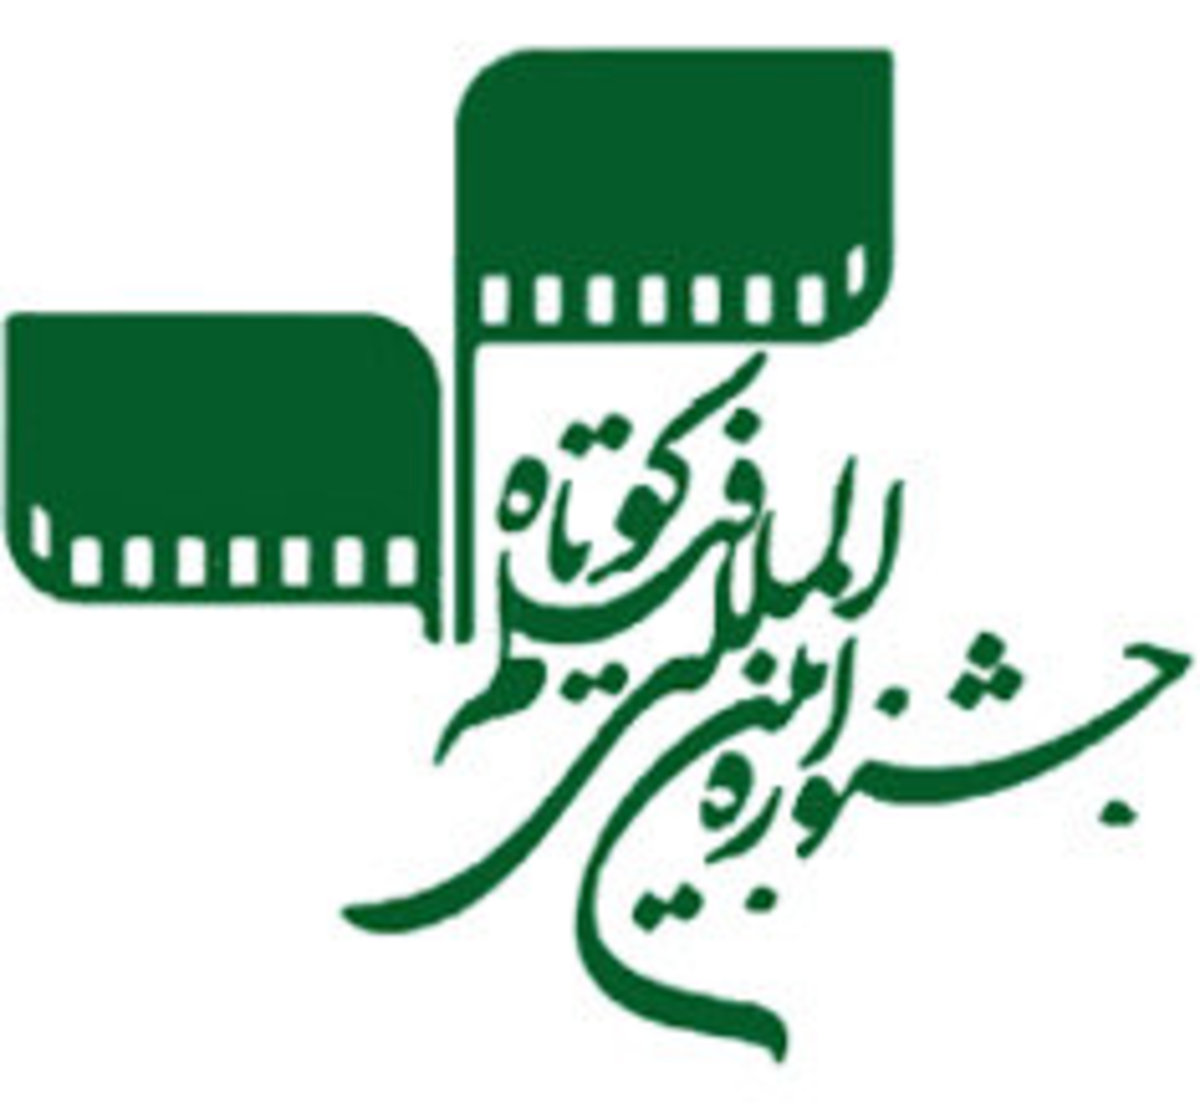 اعلام اسامی فیلم های داستانی جشنواره کوتاه تهران